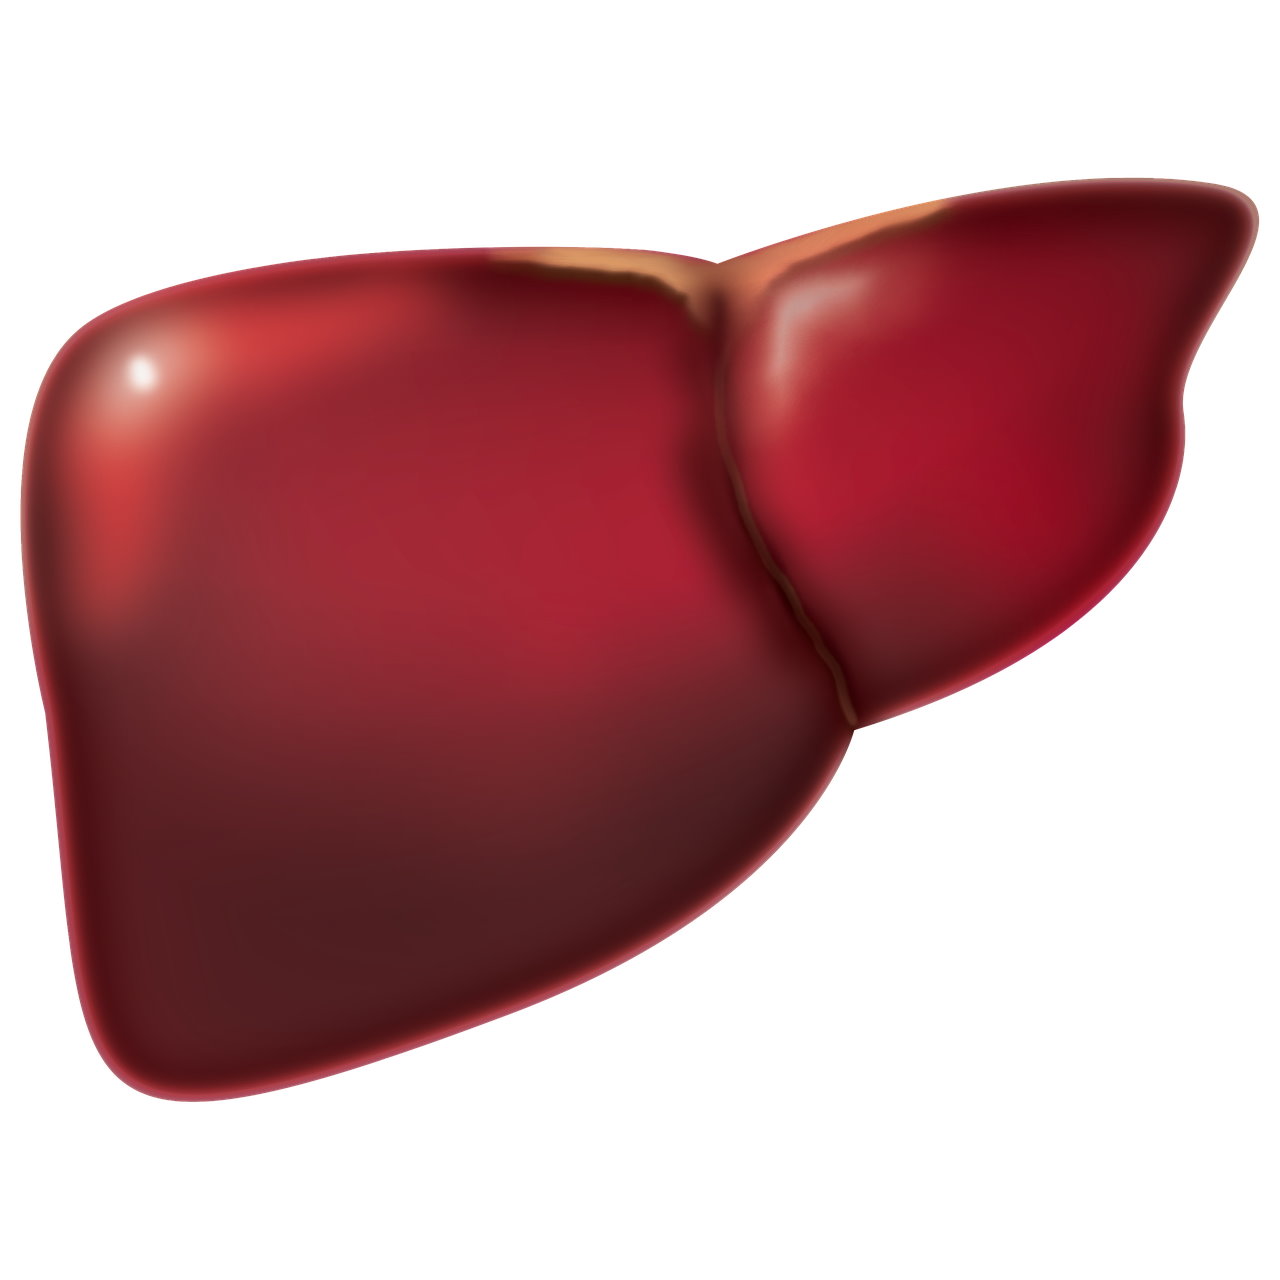 Hígado Graso. Imagen del hígado humano